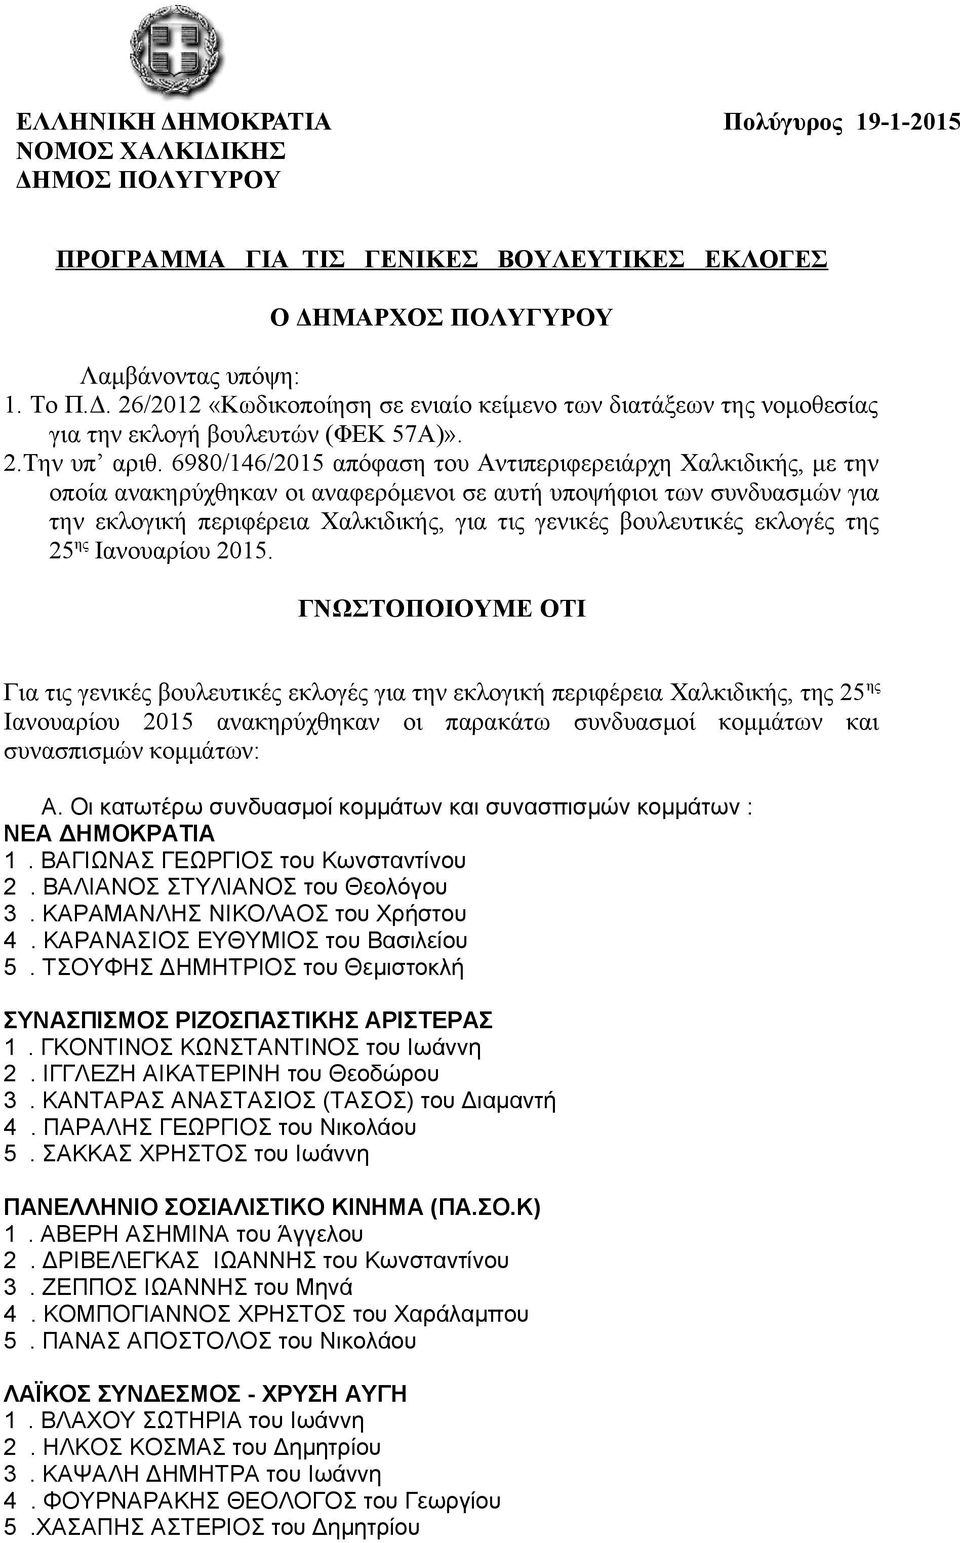 6980/146/2015 απόφαση του Αντιπεριφερειάρχη Χαλκιδικής, με την οποία ανακηρύχθηκαν οι αναφερόμενοι σε αυτή υποψήφιοι των συνδυασμών για την εκλογική περιφέρεια Χαλκιδικής, για τις γενικές βουλευτικές